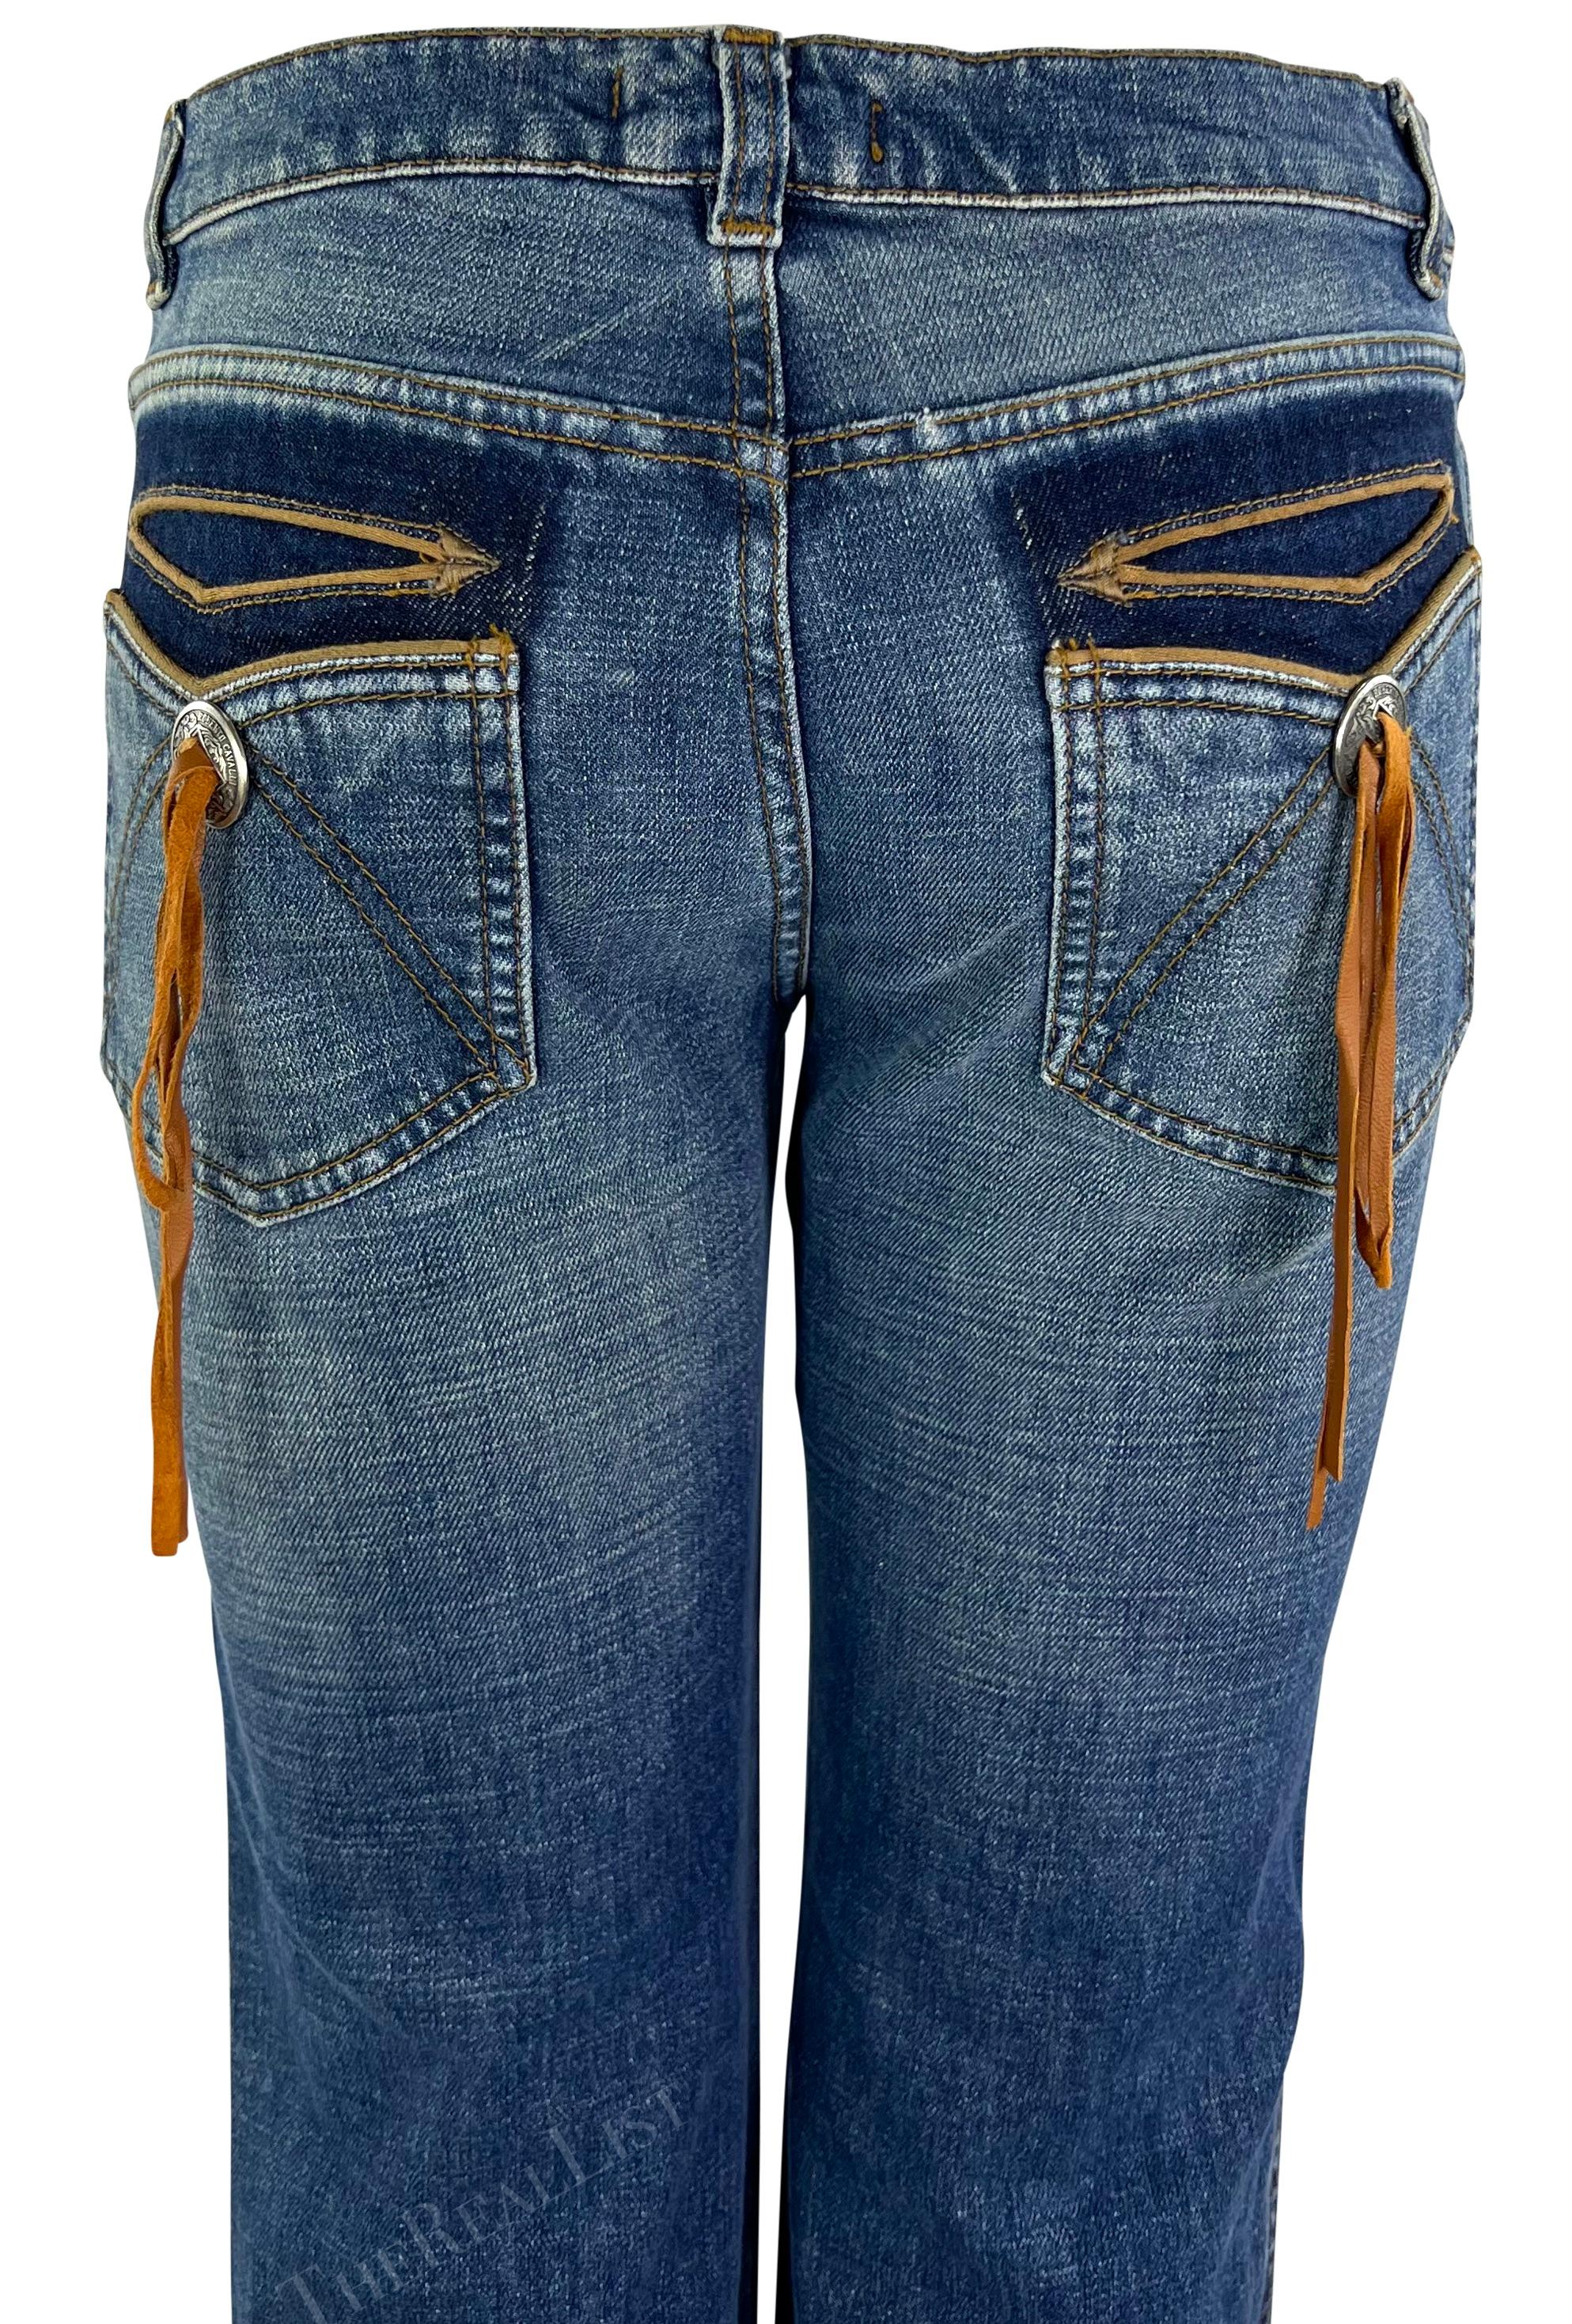 Ich präsentiere eine Jeans von Roberto Cavalli in heller Waschung. Diese leicht ausgestellte Jeans aus dem Jahr 2003 ist mit einem silberfarbenen Metallknopf und Wildlederfransen an den Gesäßtaschen verziert. Diese vom amerikanischen Westen